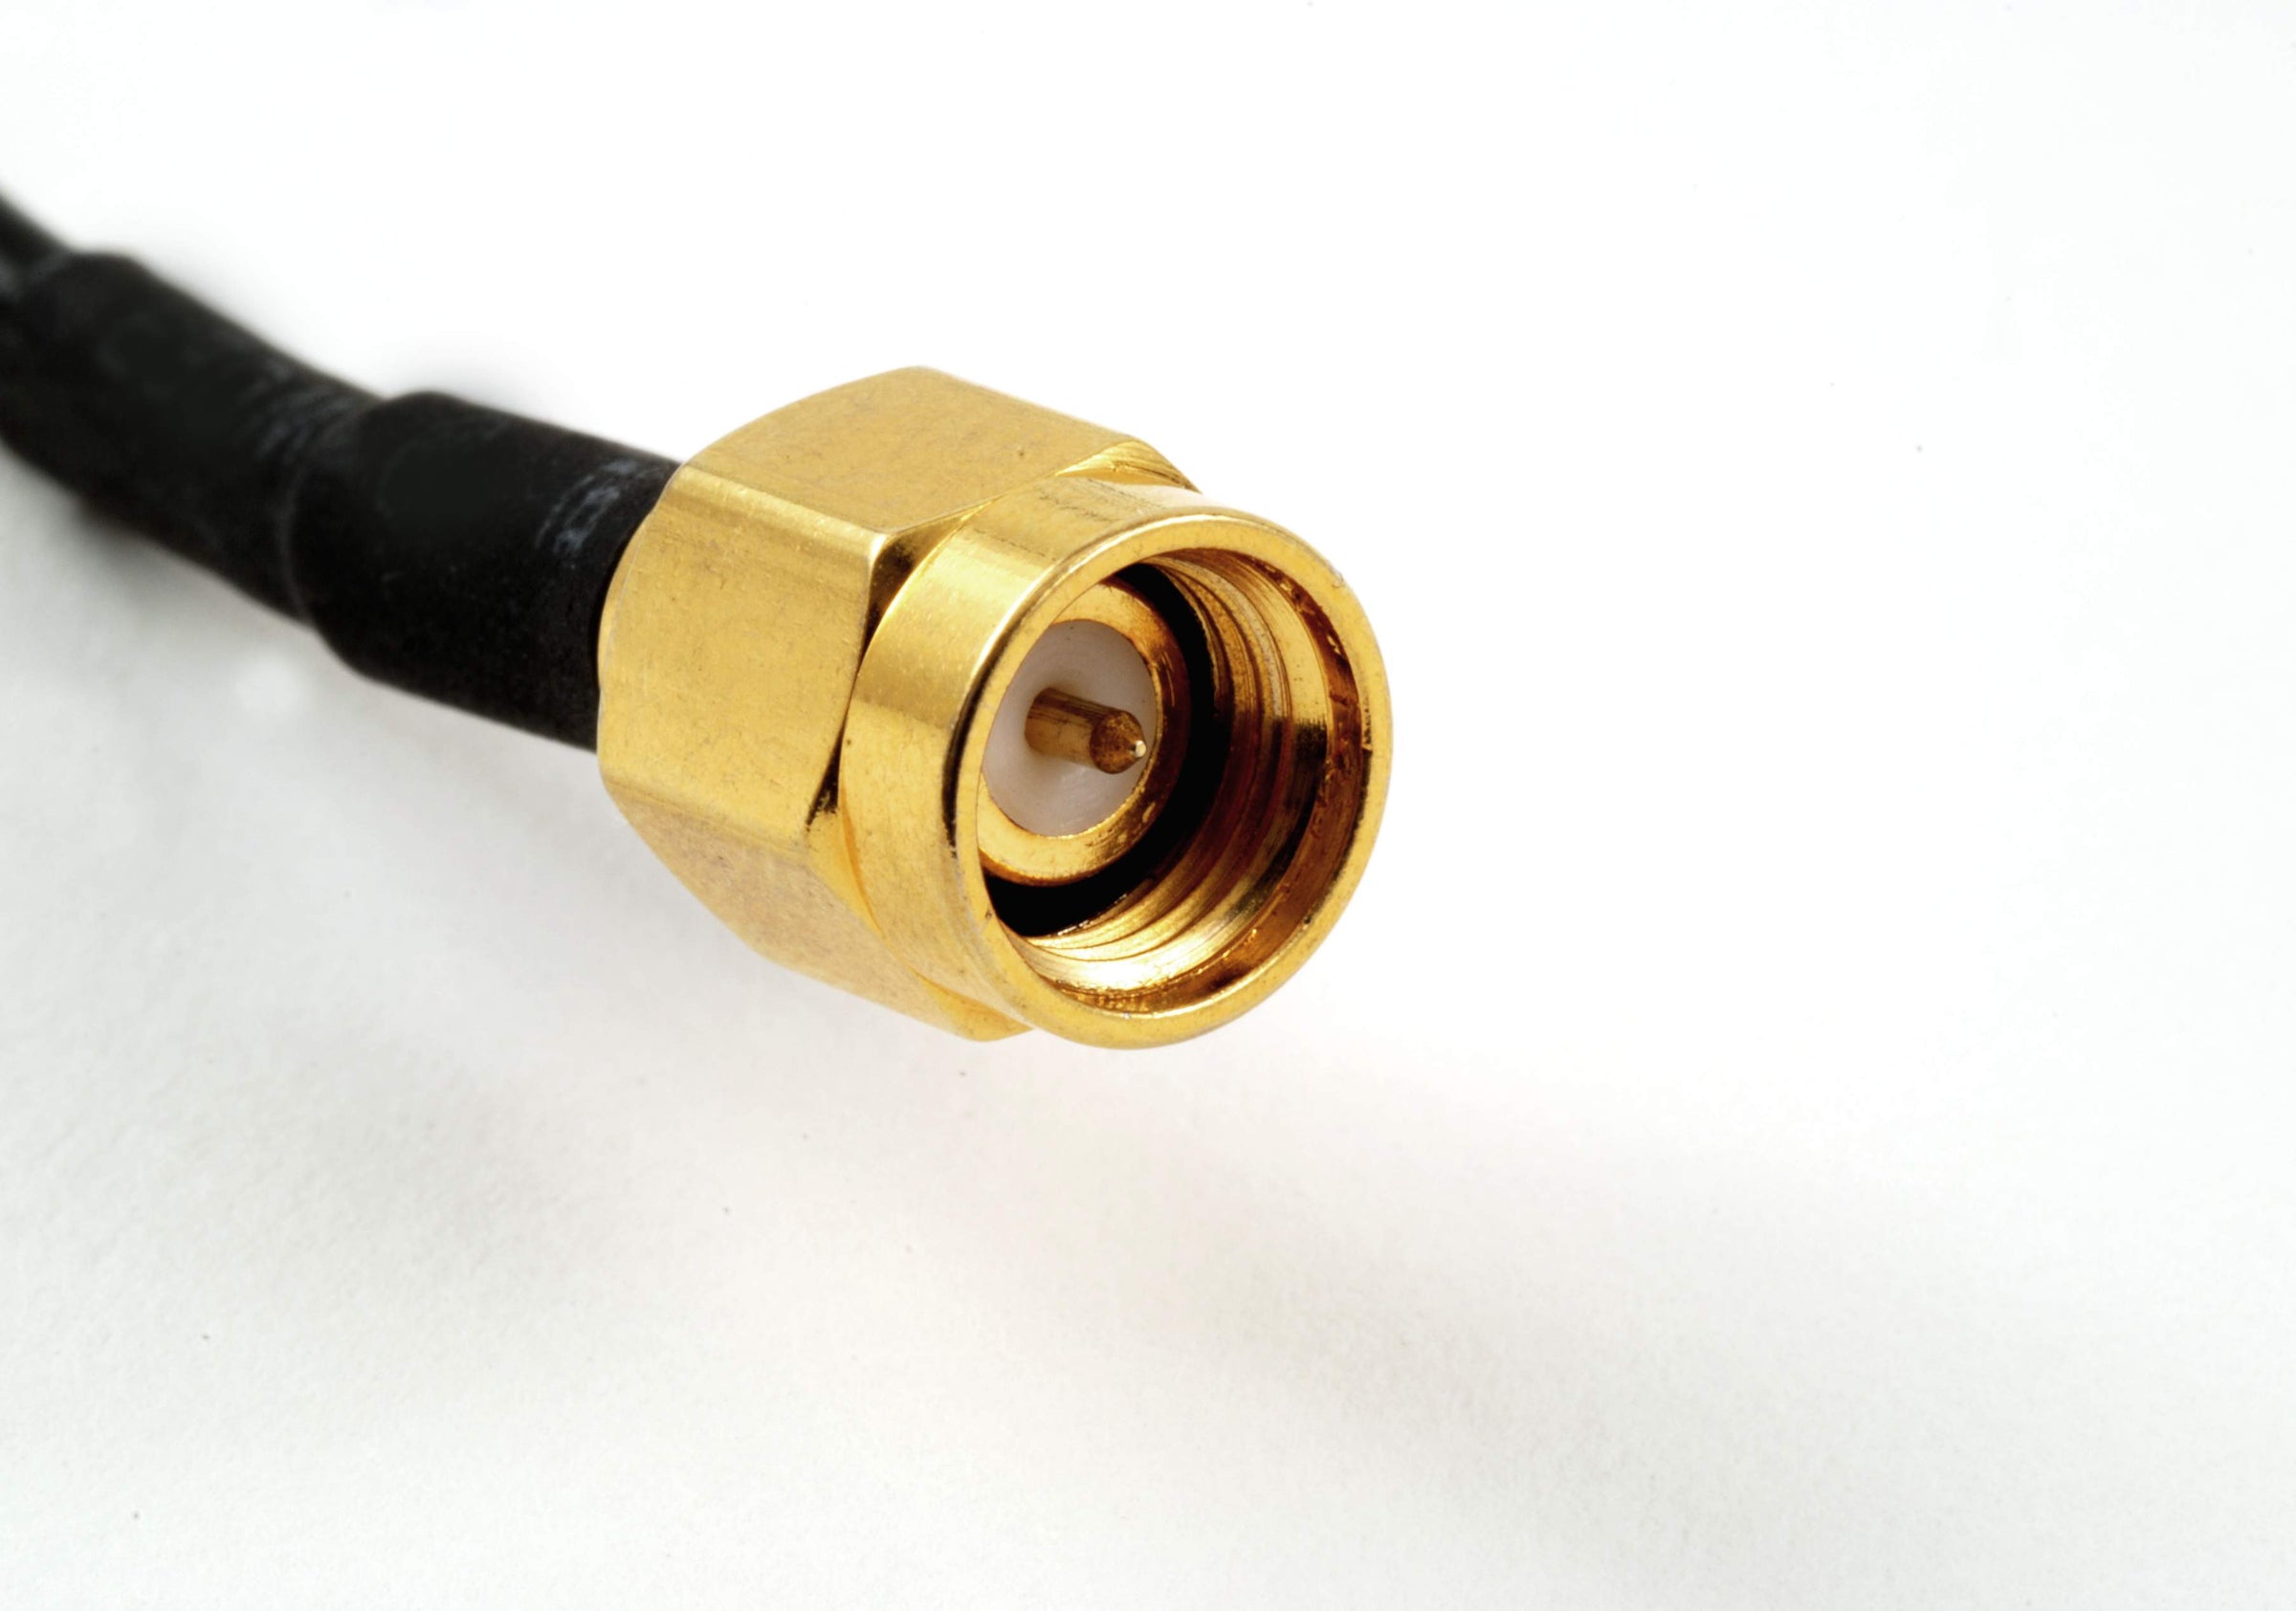 PureFiber® PRO - HDMI et Internet  Câble fibre hybride pré-raccordé a